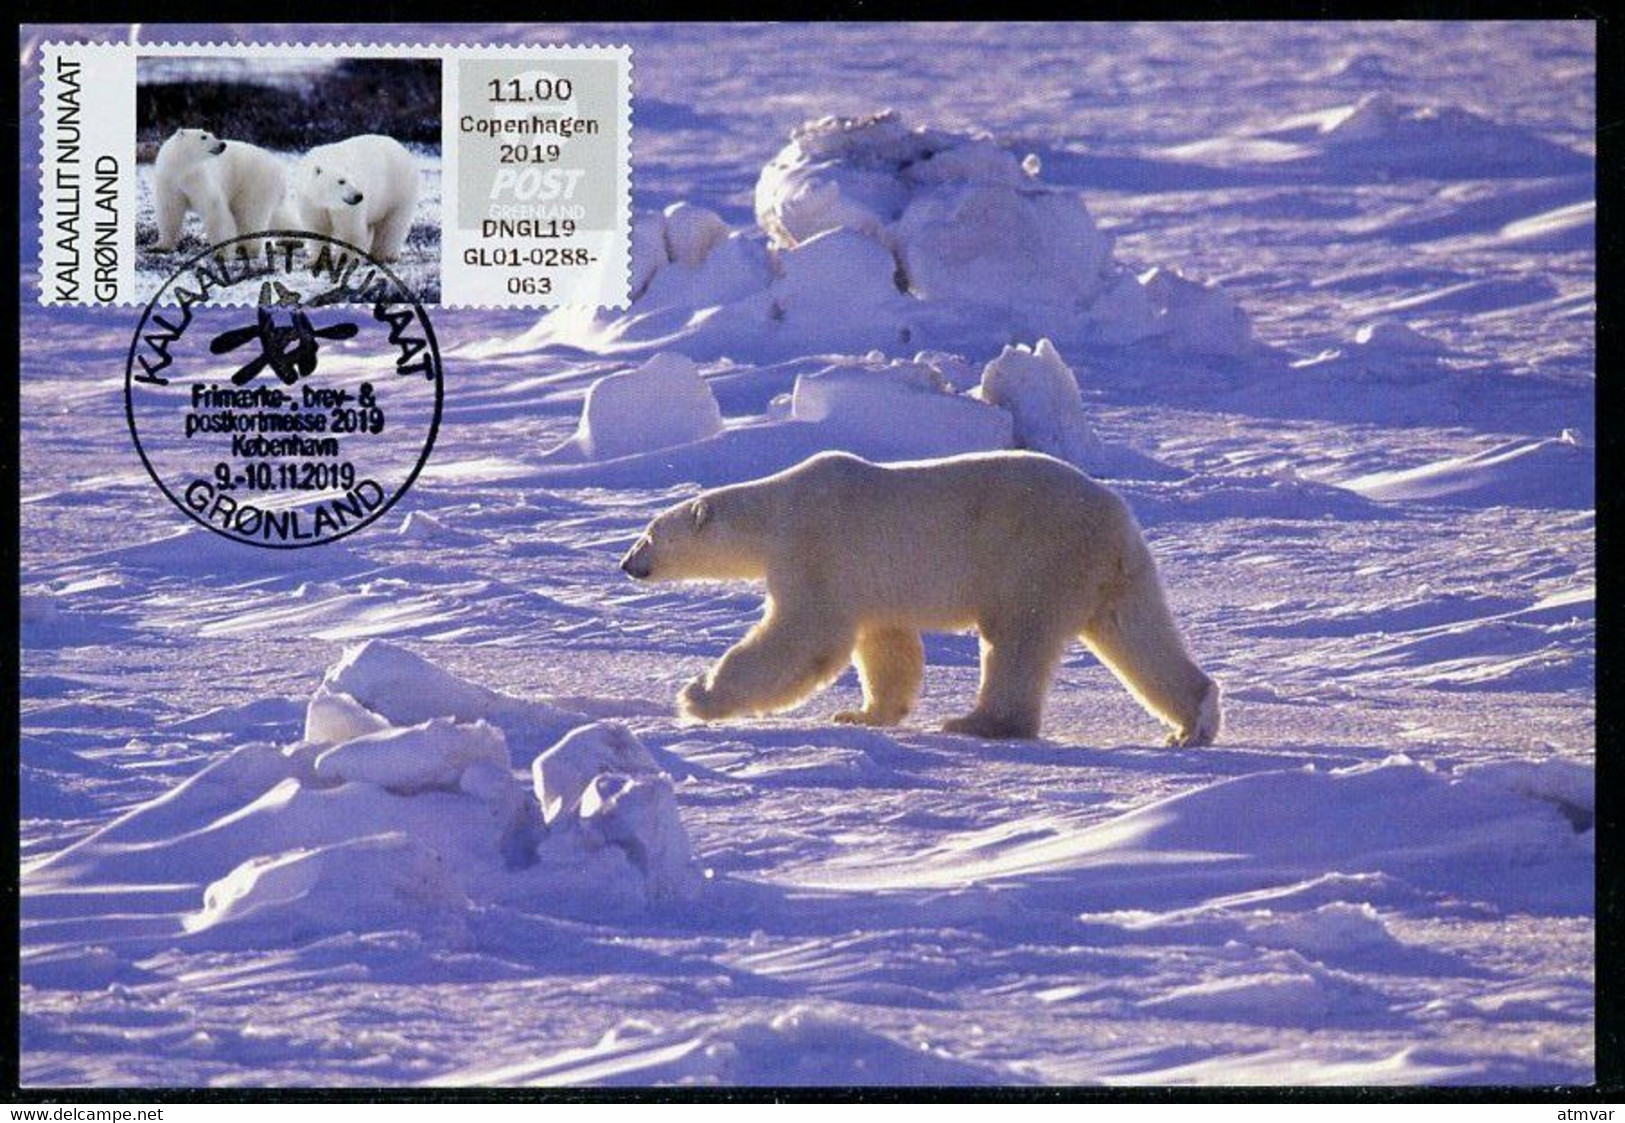 GREENLAND GROENLAND (2019) - Carte Maximum Card ATM - Polar Bear, Der Eisbär, Ours Blanc (Ursus Thalarctos Maritimus) - Cartes-Maximum (CM)